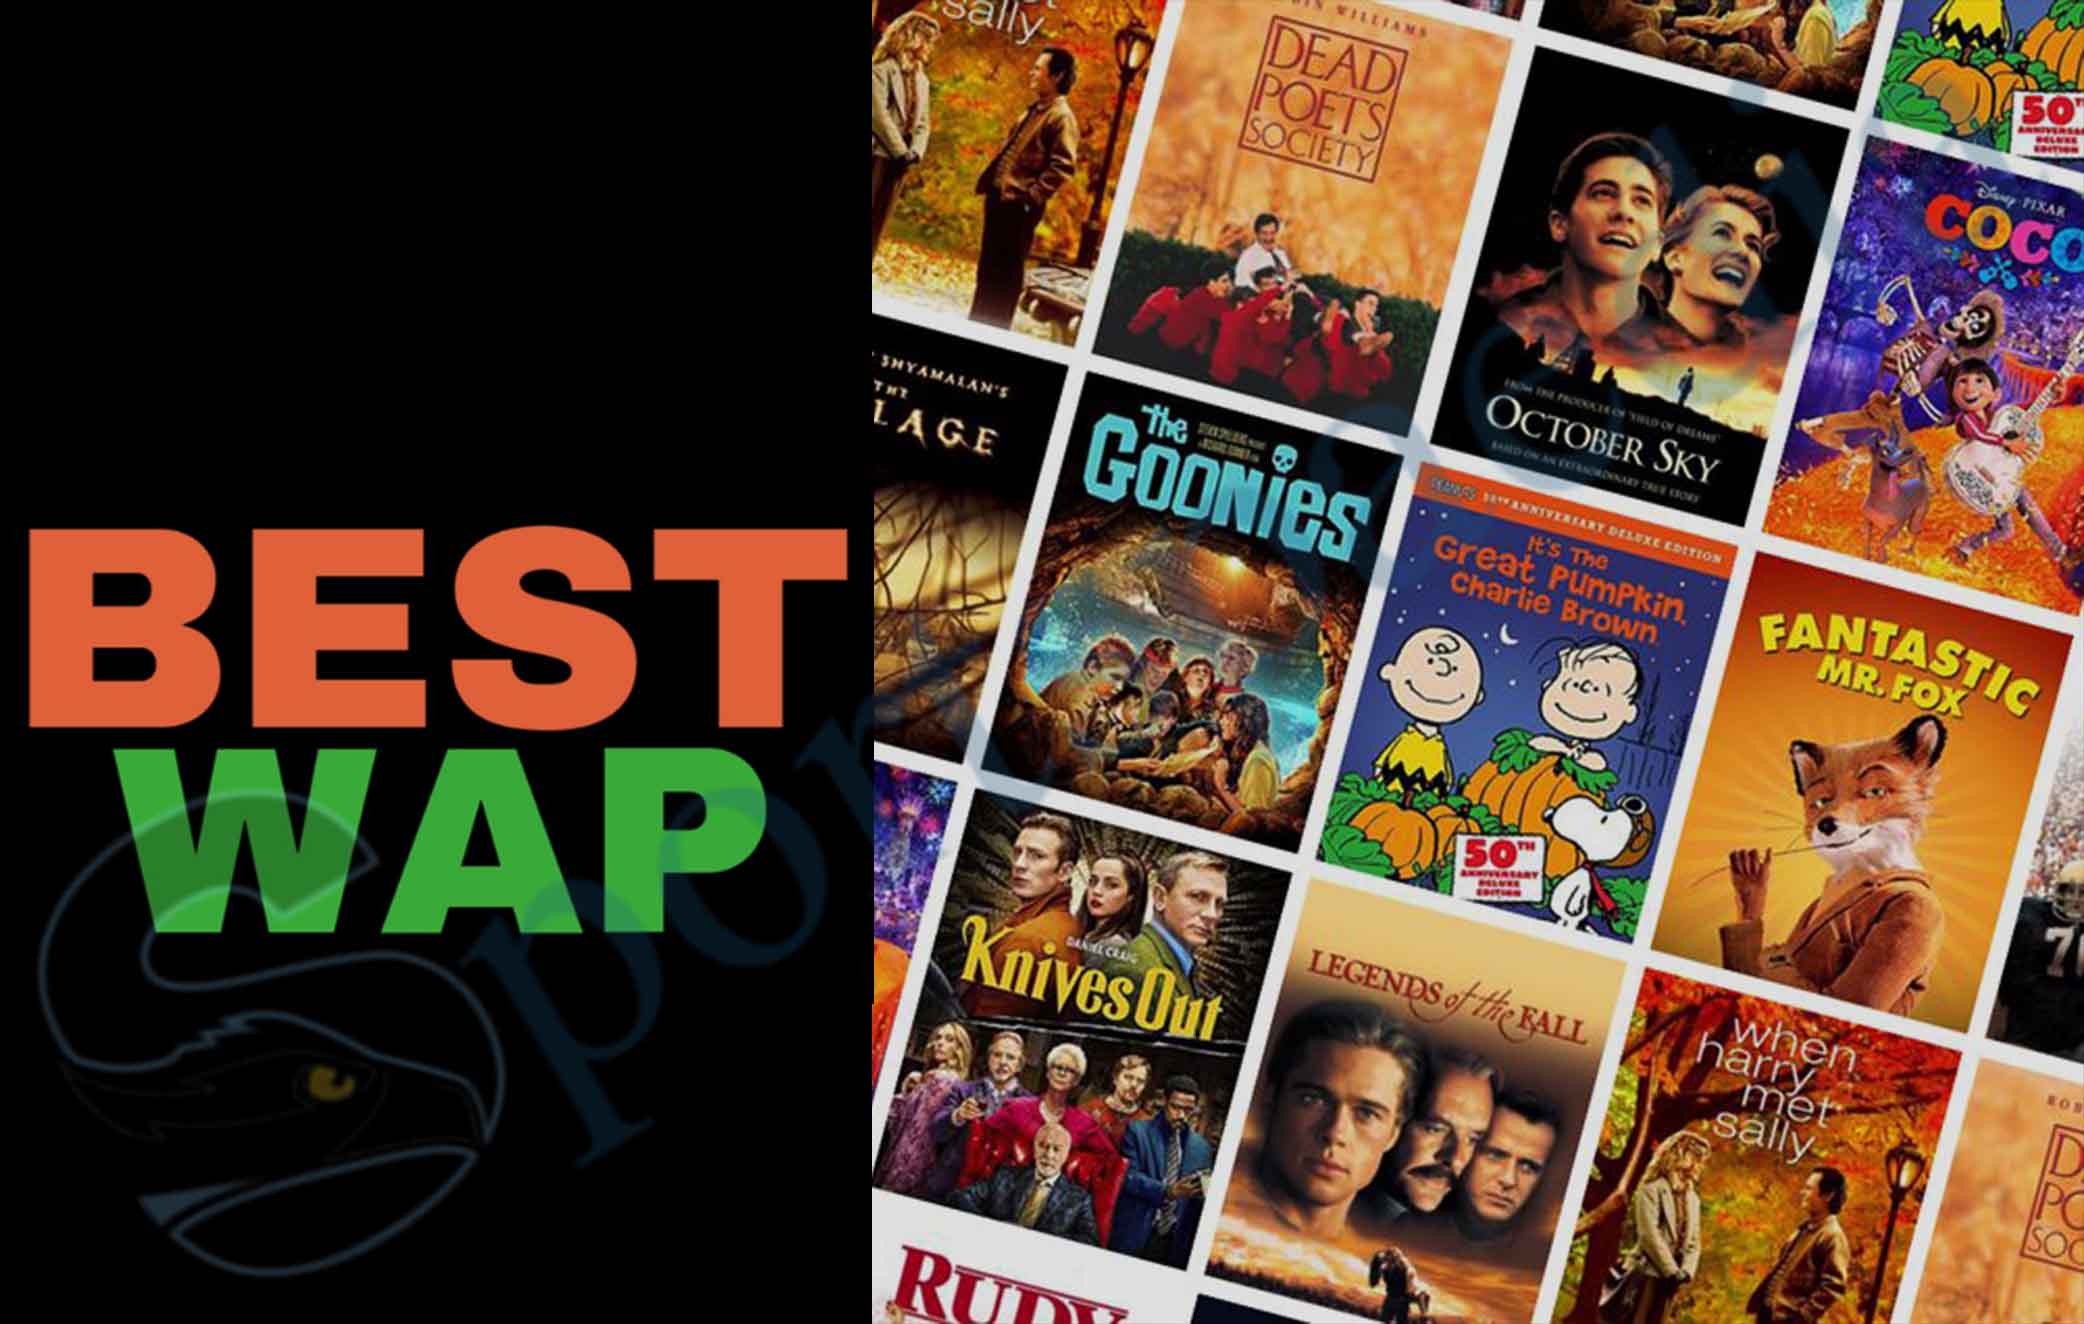 Bestwap Movies - Download Free Bollywood Movies on Bestwap.in